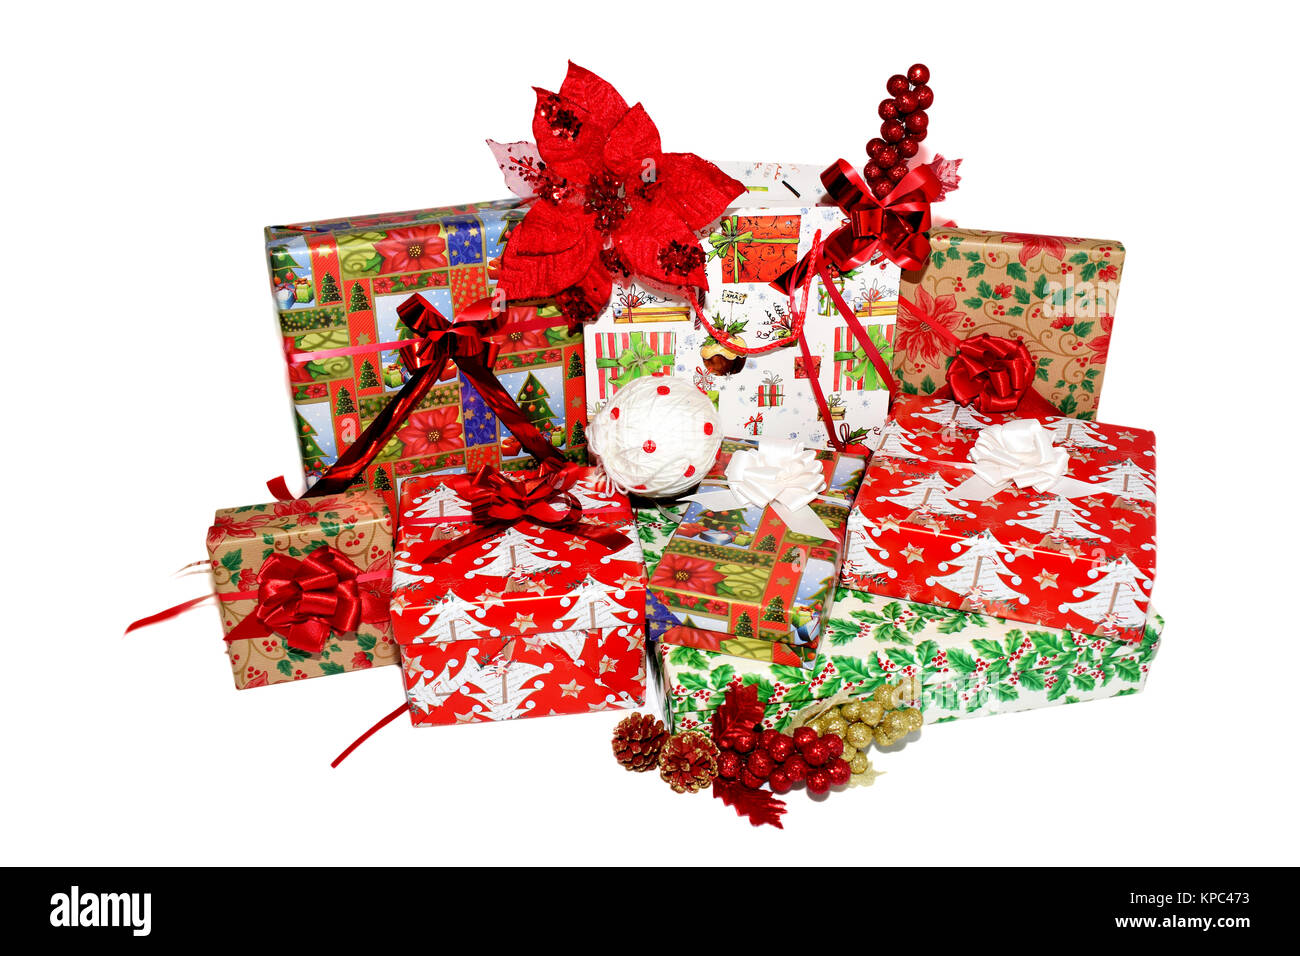 Weihnachten Geschenke in Boxen und Taschen, die in thematische Papier gewickelt. Dekorationen mit roten Blumen, Weihnachten weiß und Golden Globes und Tannenzapfen Stockfoto